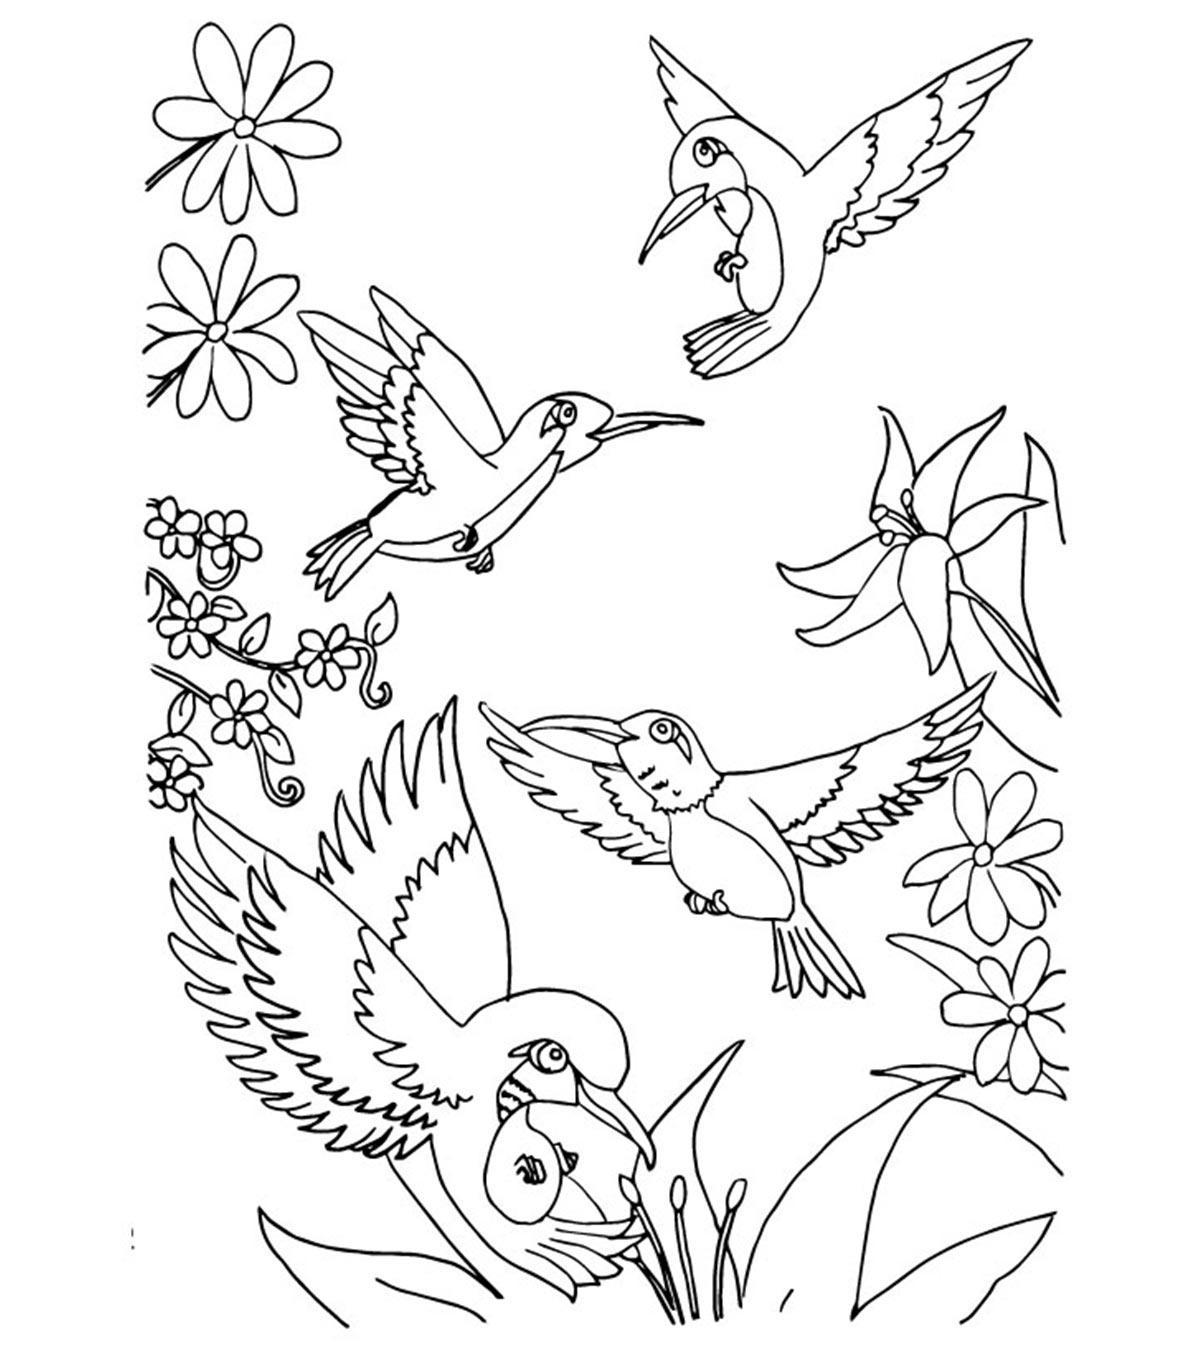 Tranh tô màu bốn chú chim bay lượn trong vườn